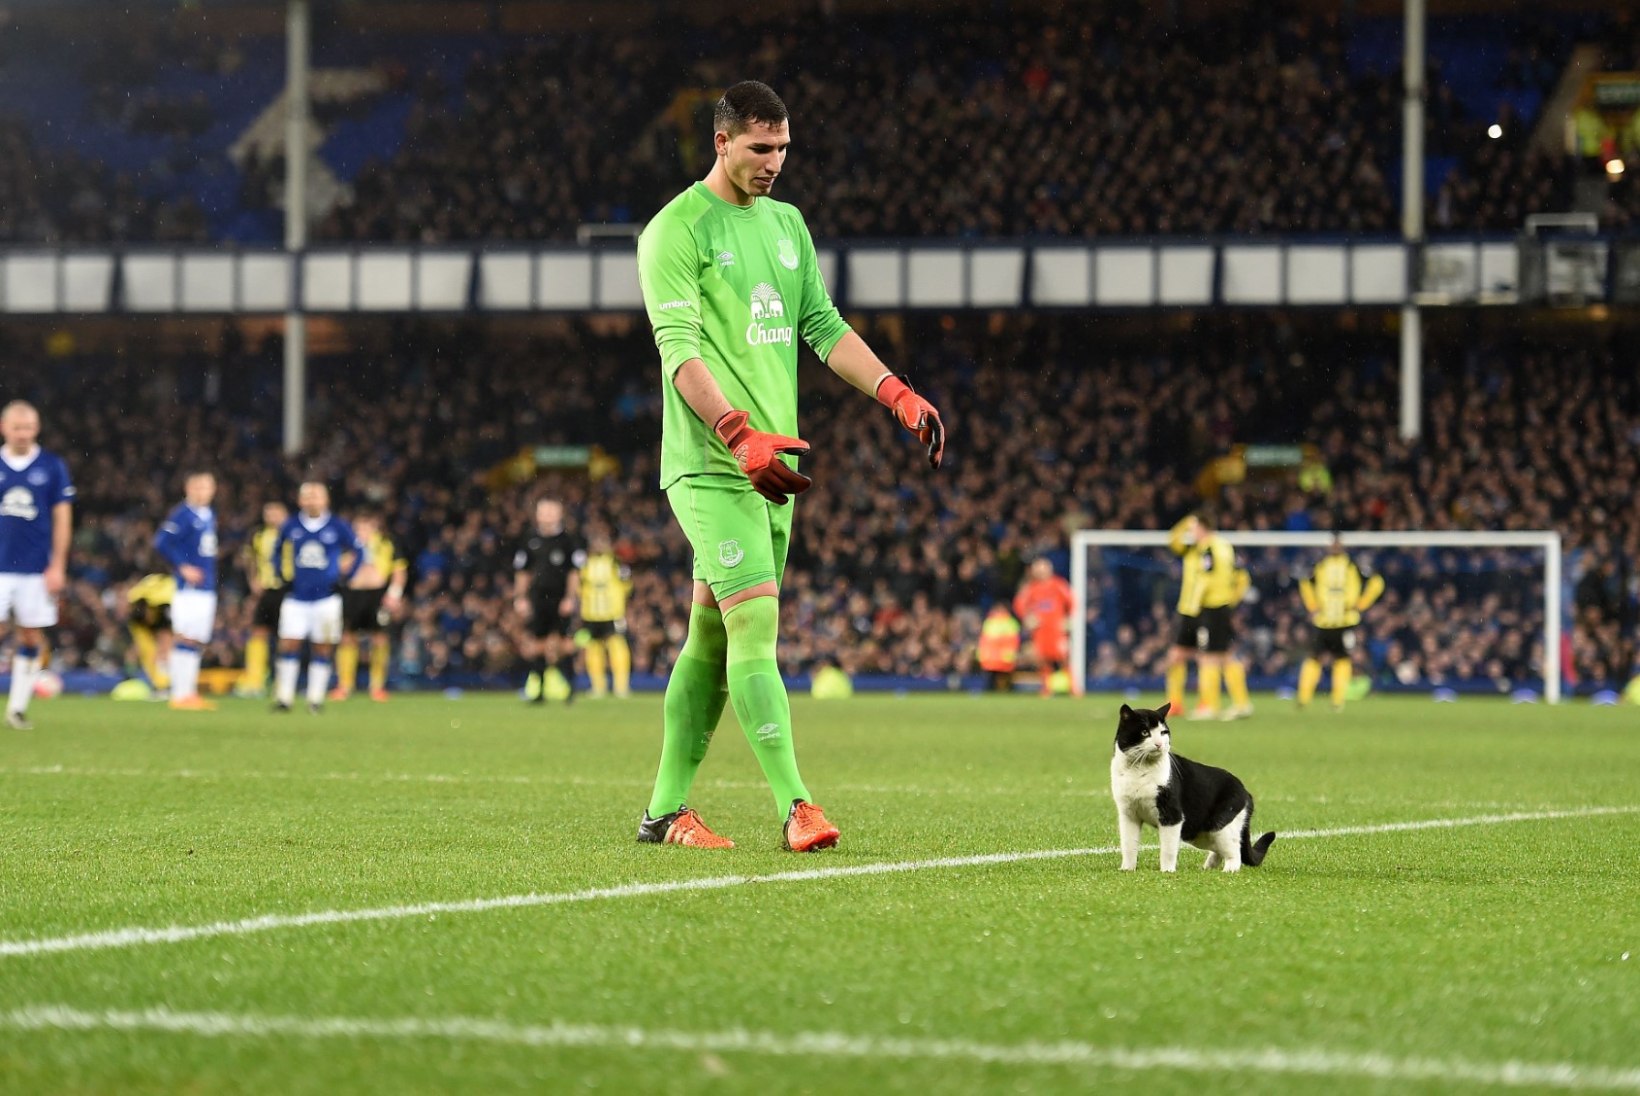 FOTOD JA VIDEO | Evertoni väravavaht hirmutas nunnu kiisu palliplatsilt minema